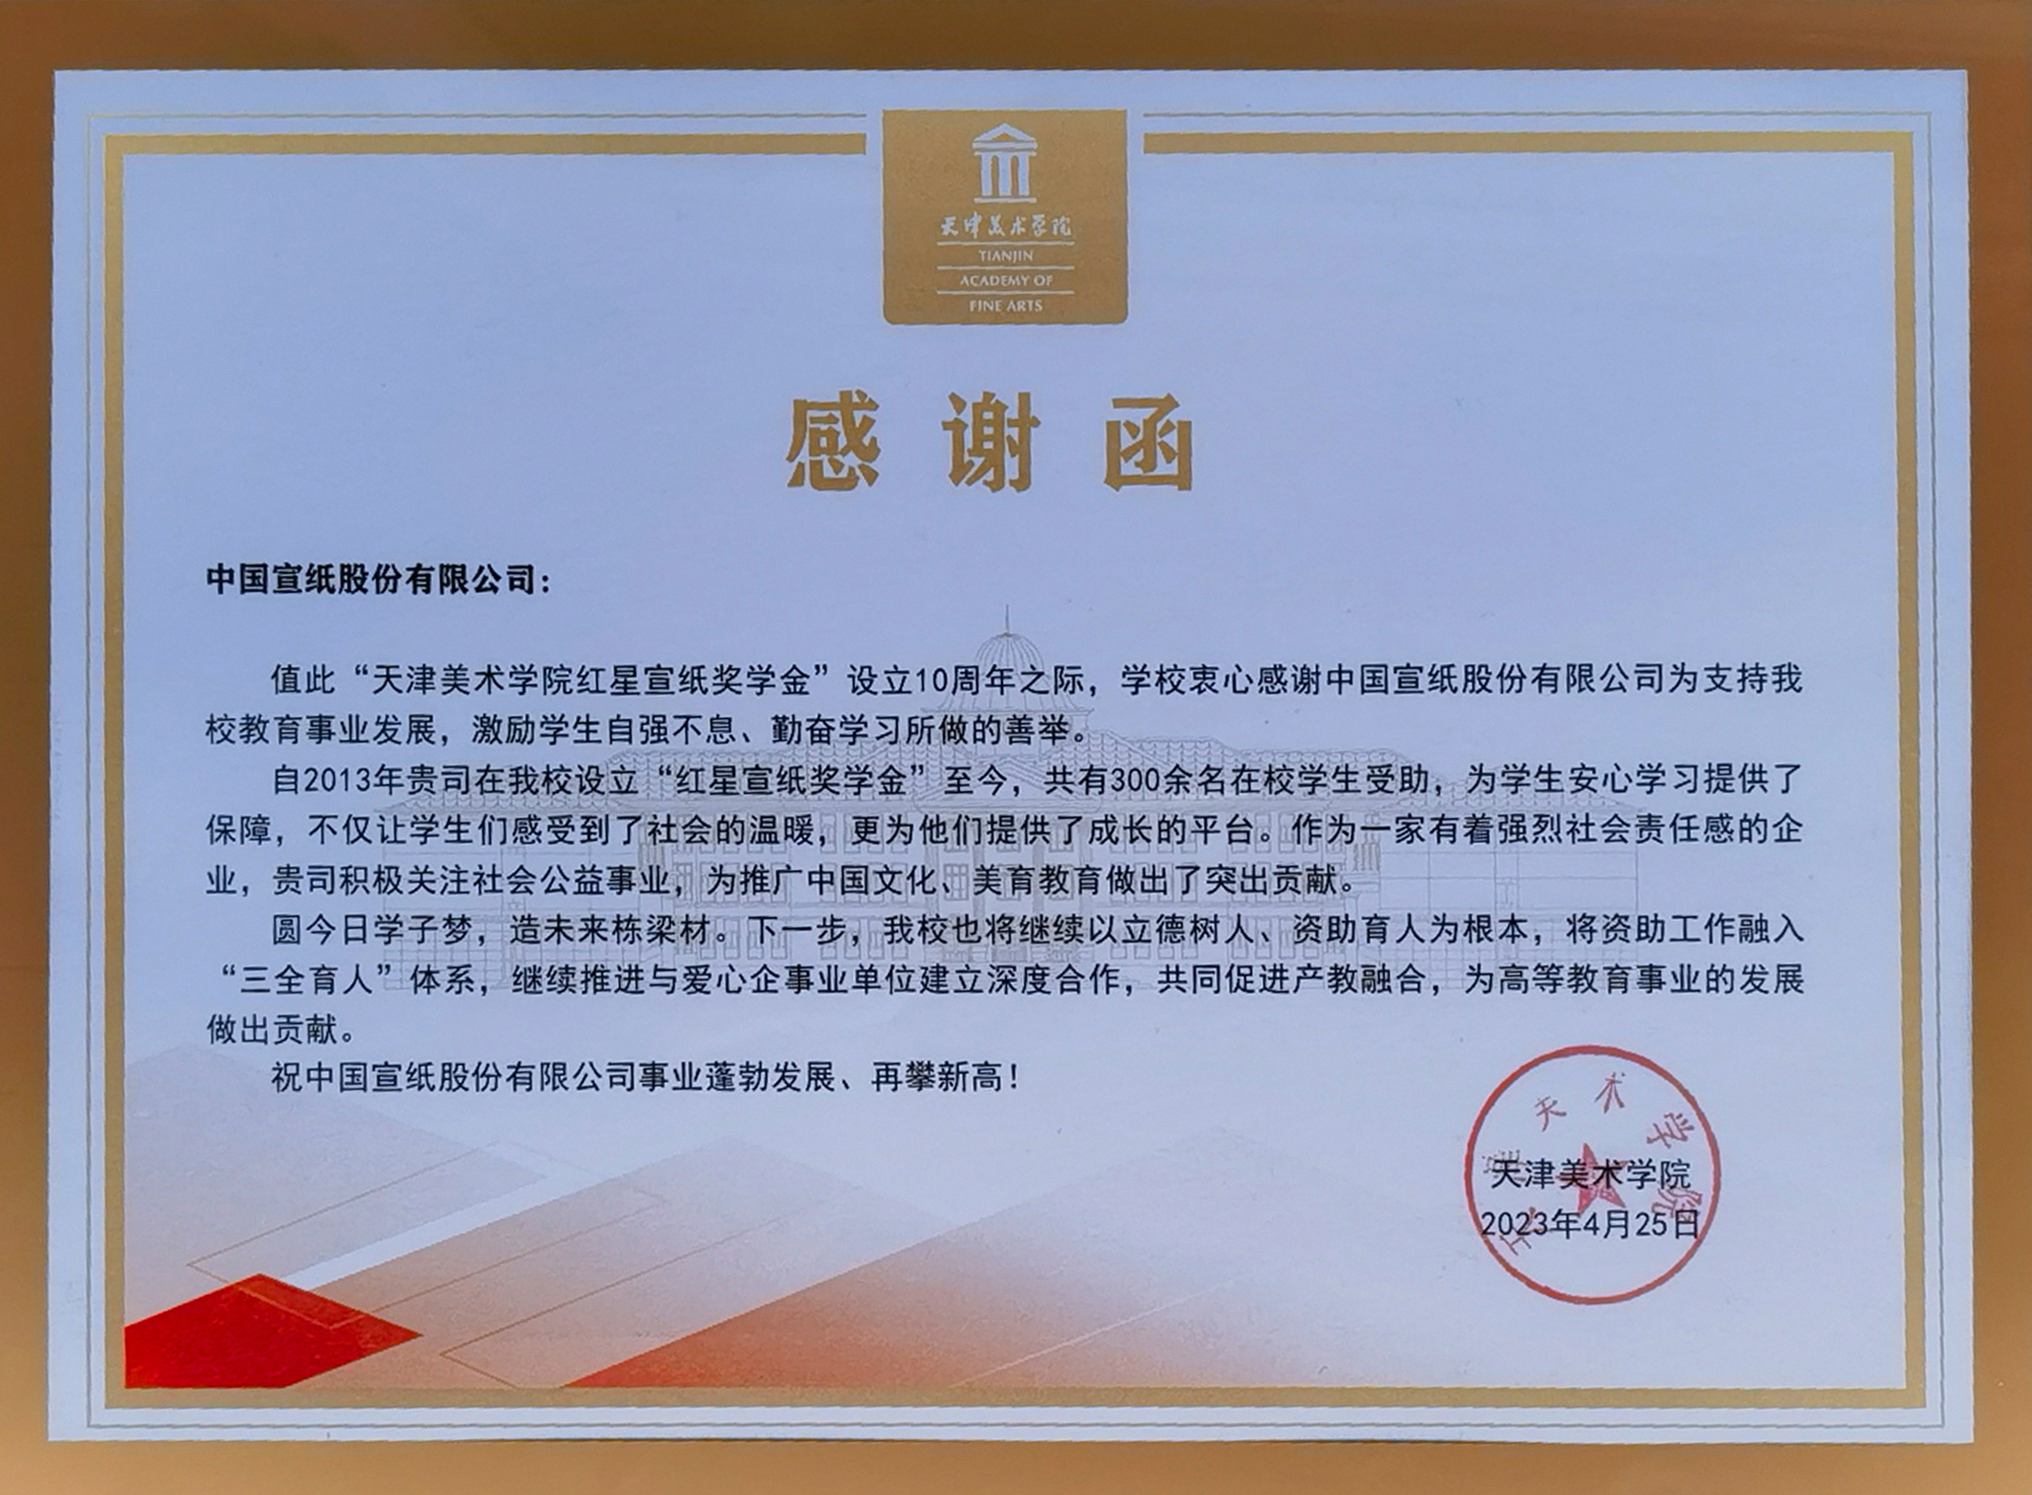 天津美院致函感谢红星纸浆奖学金设立10周年